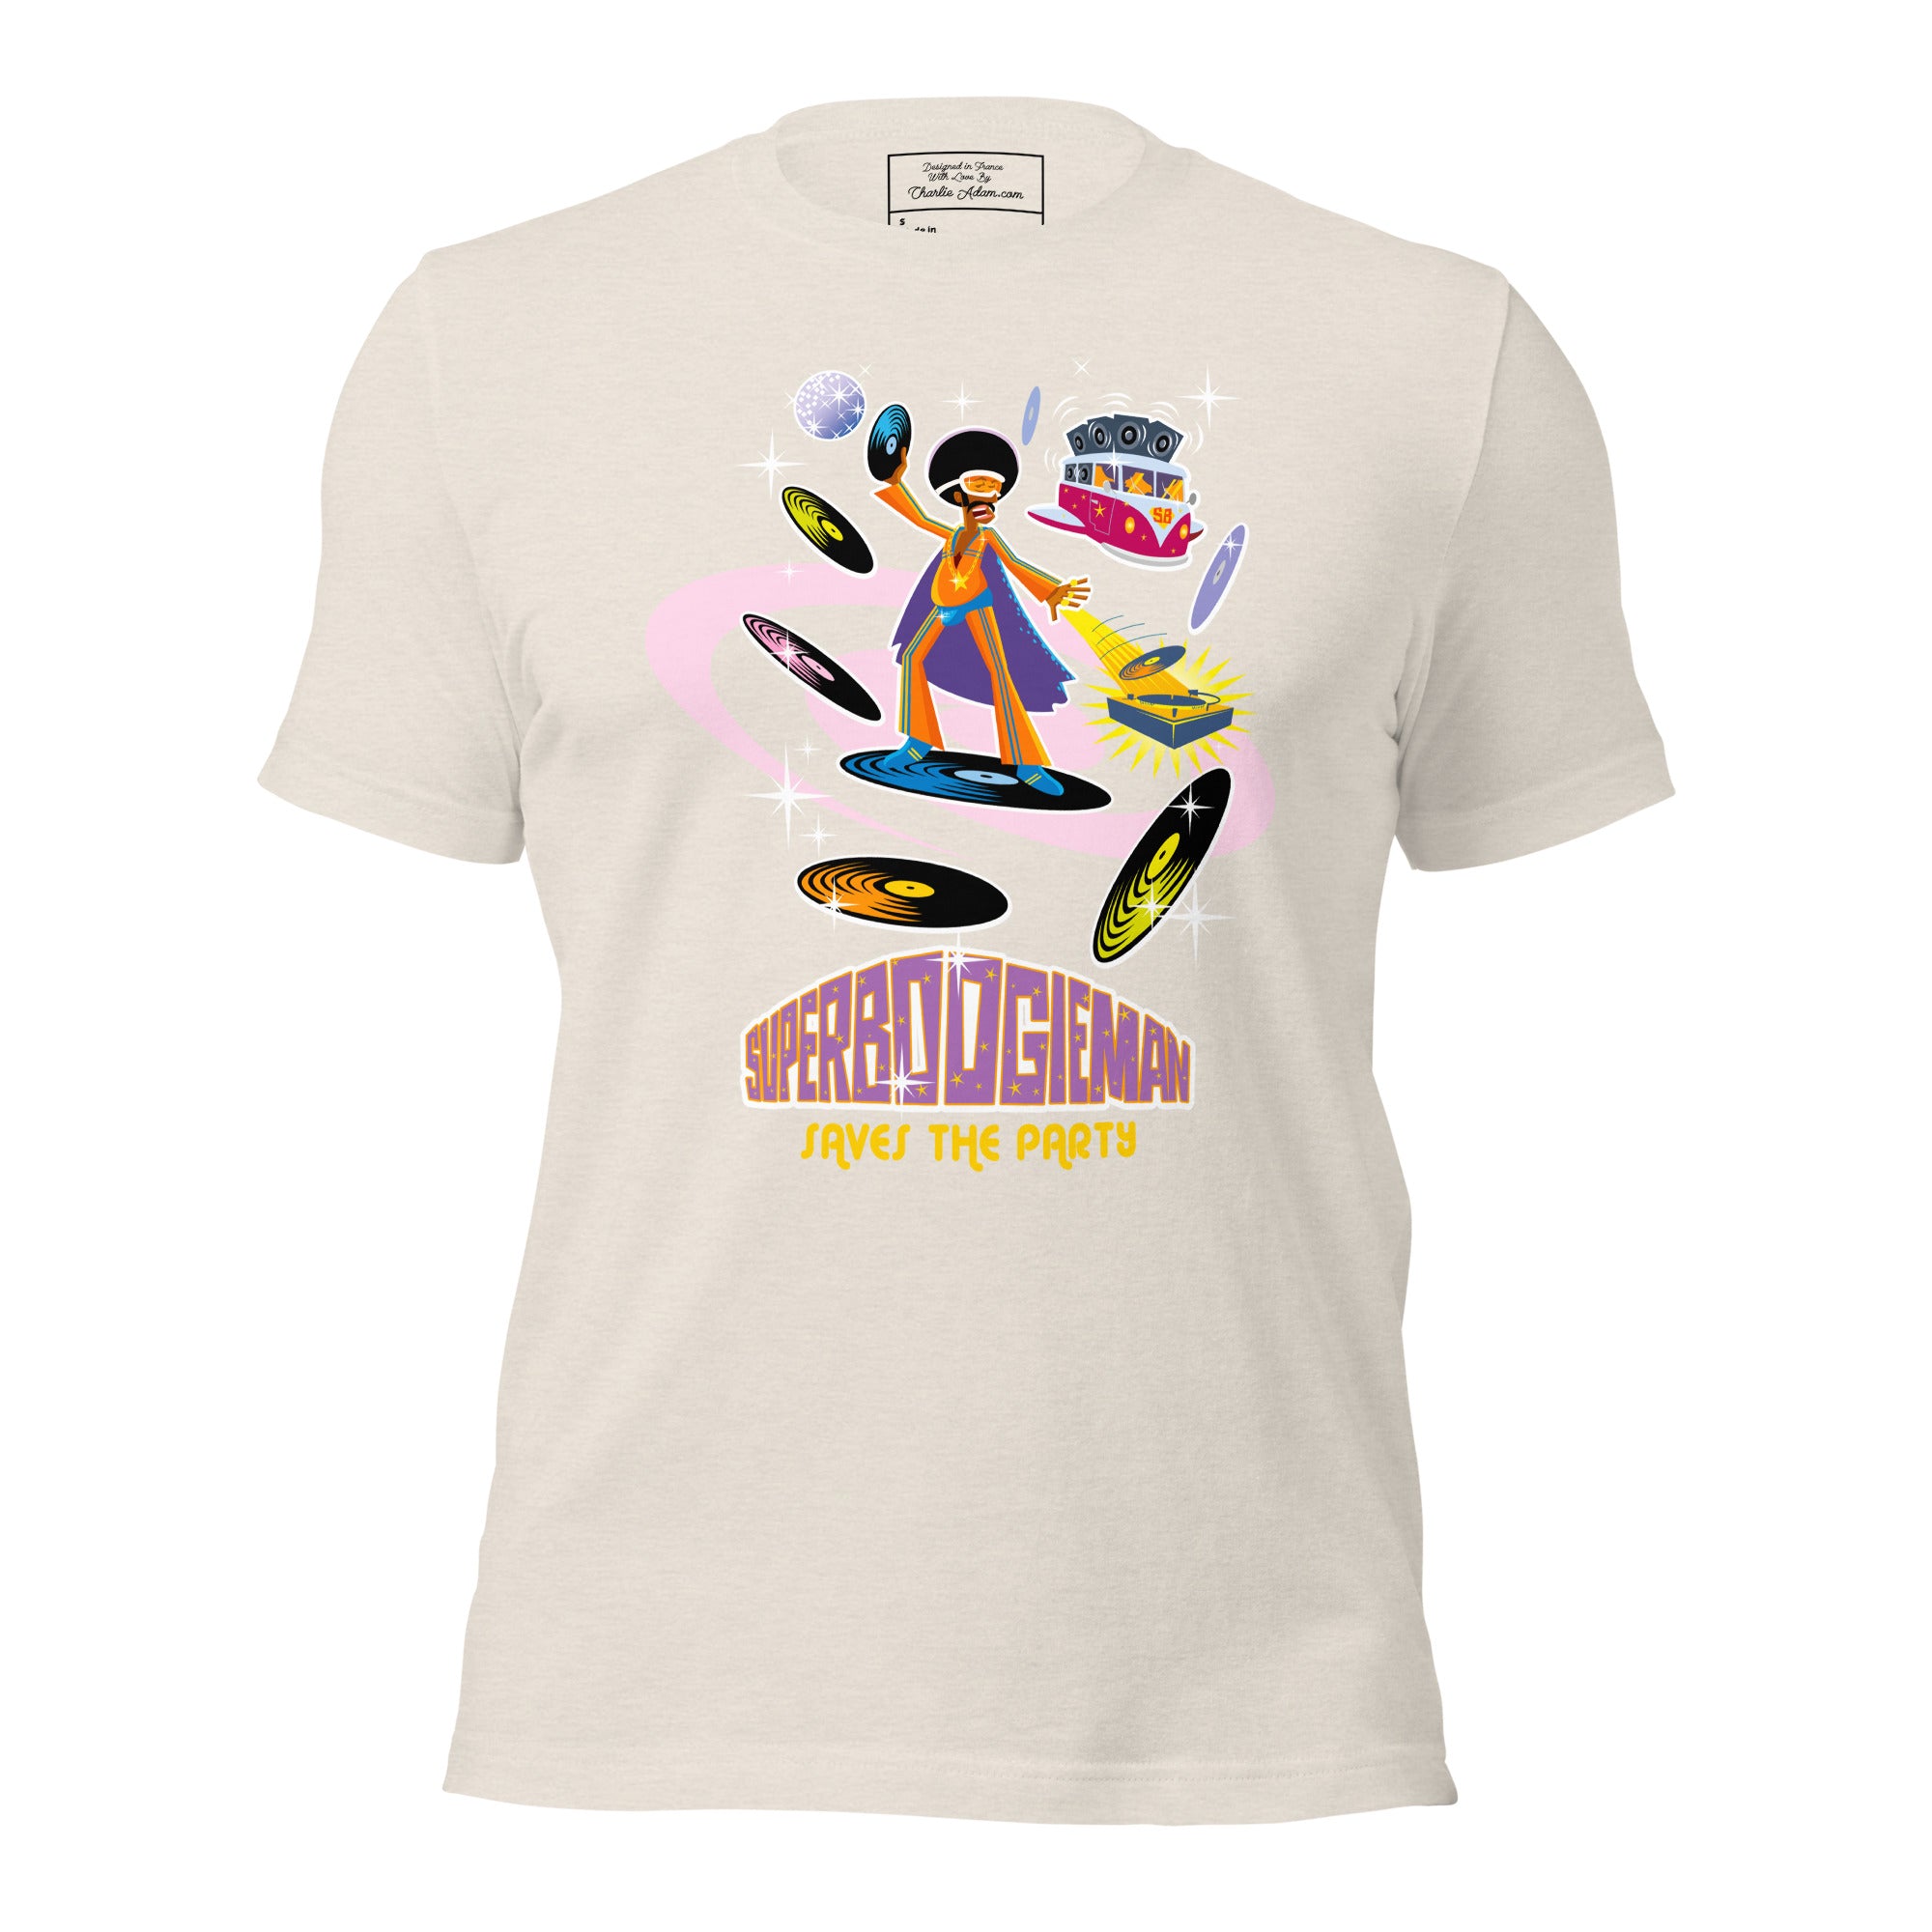 T-shirt en coton unisexe Superboogieman saves the party sur couleurs chinées claires